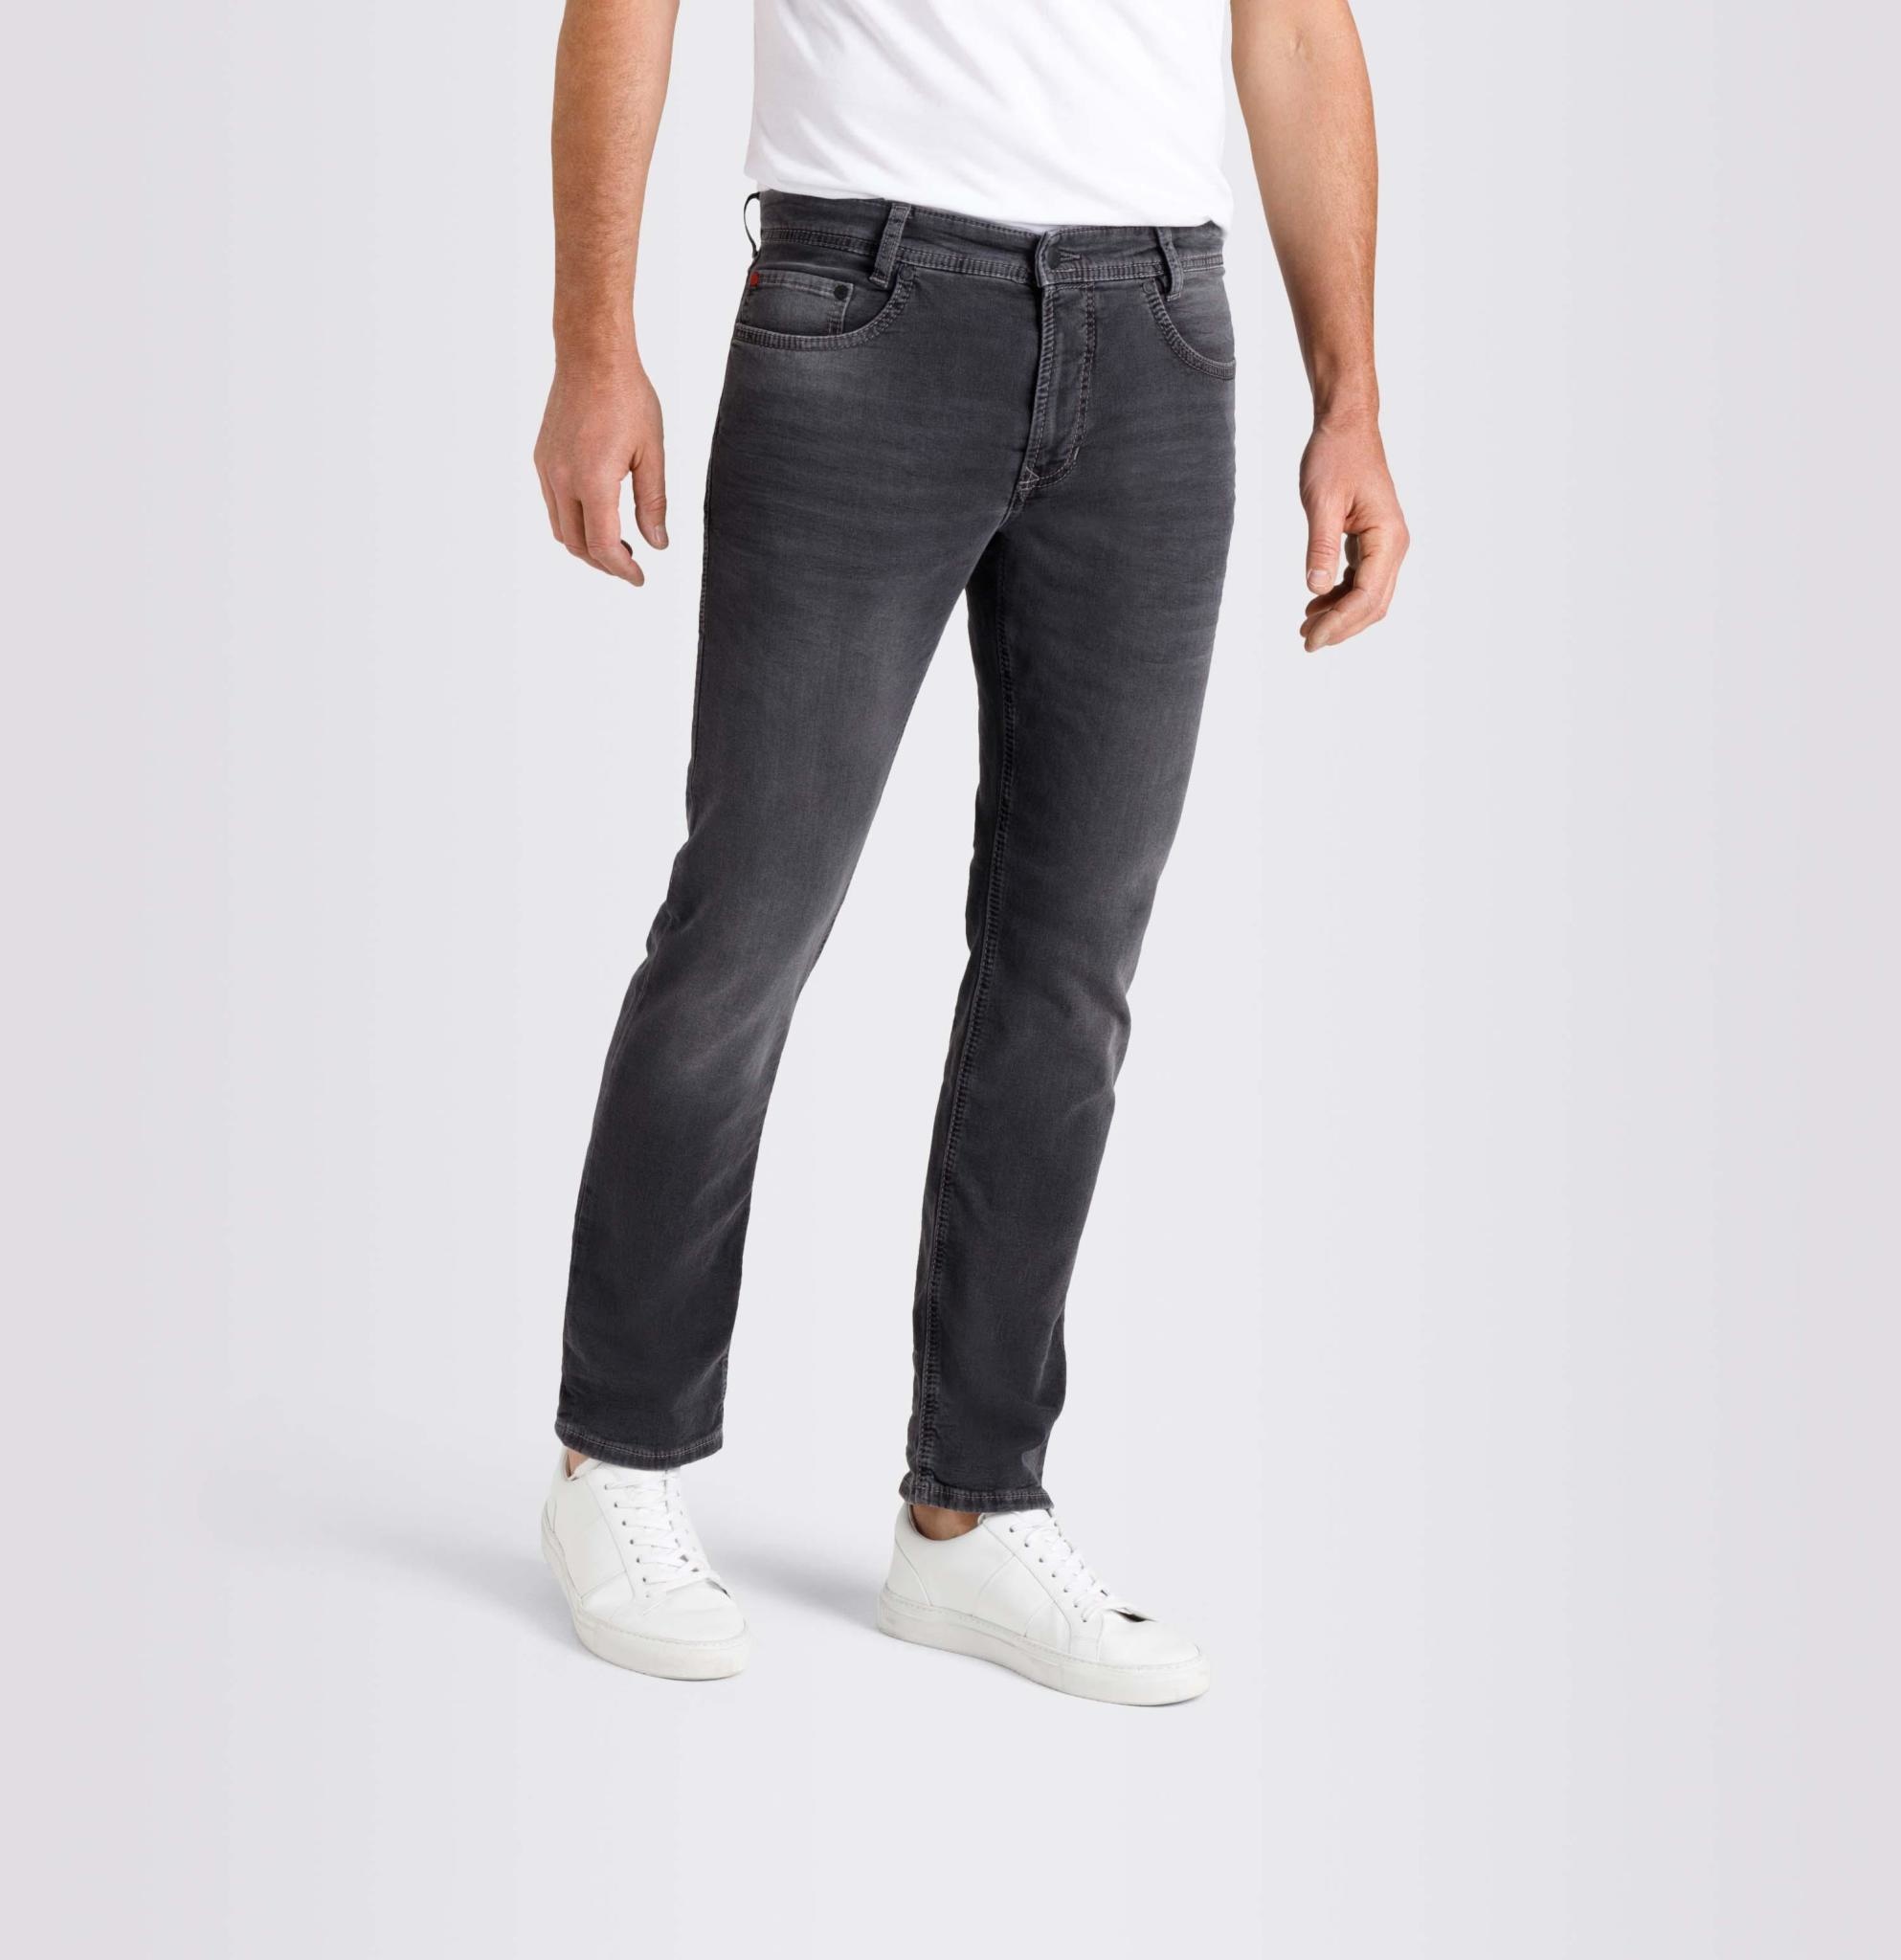 MAC jeans 15 broek jog 'n jeans 0590 H830 grey used - Boetiek Maro